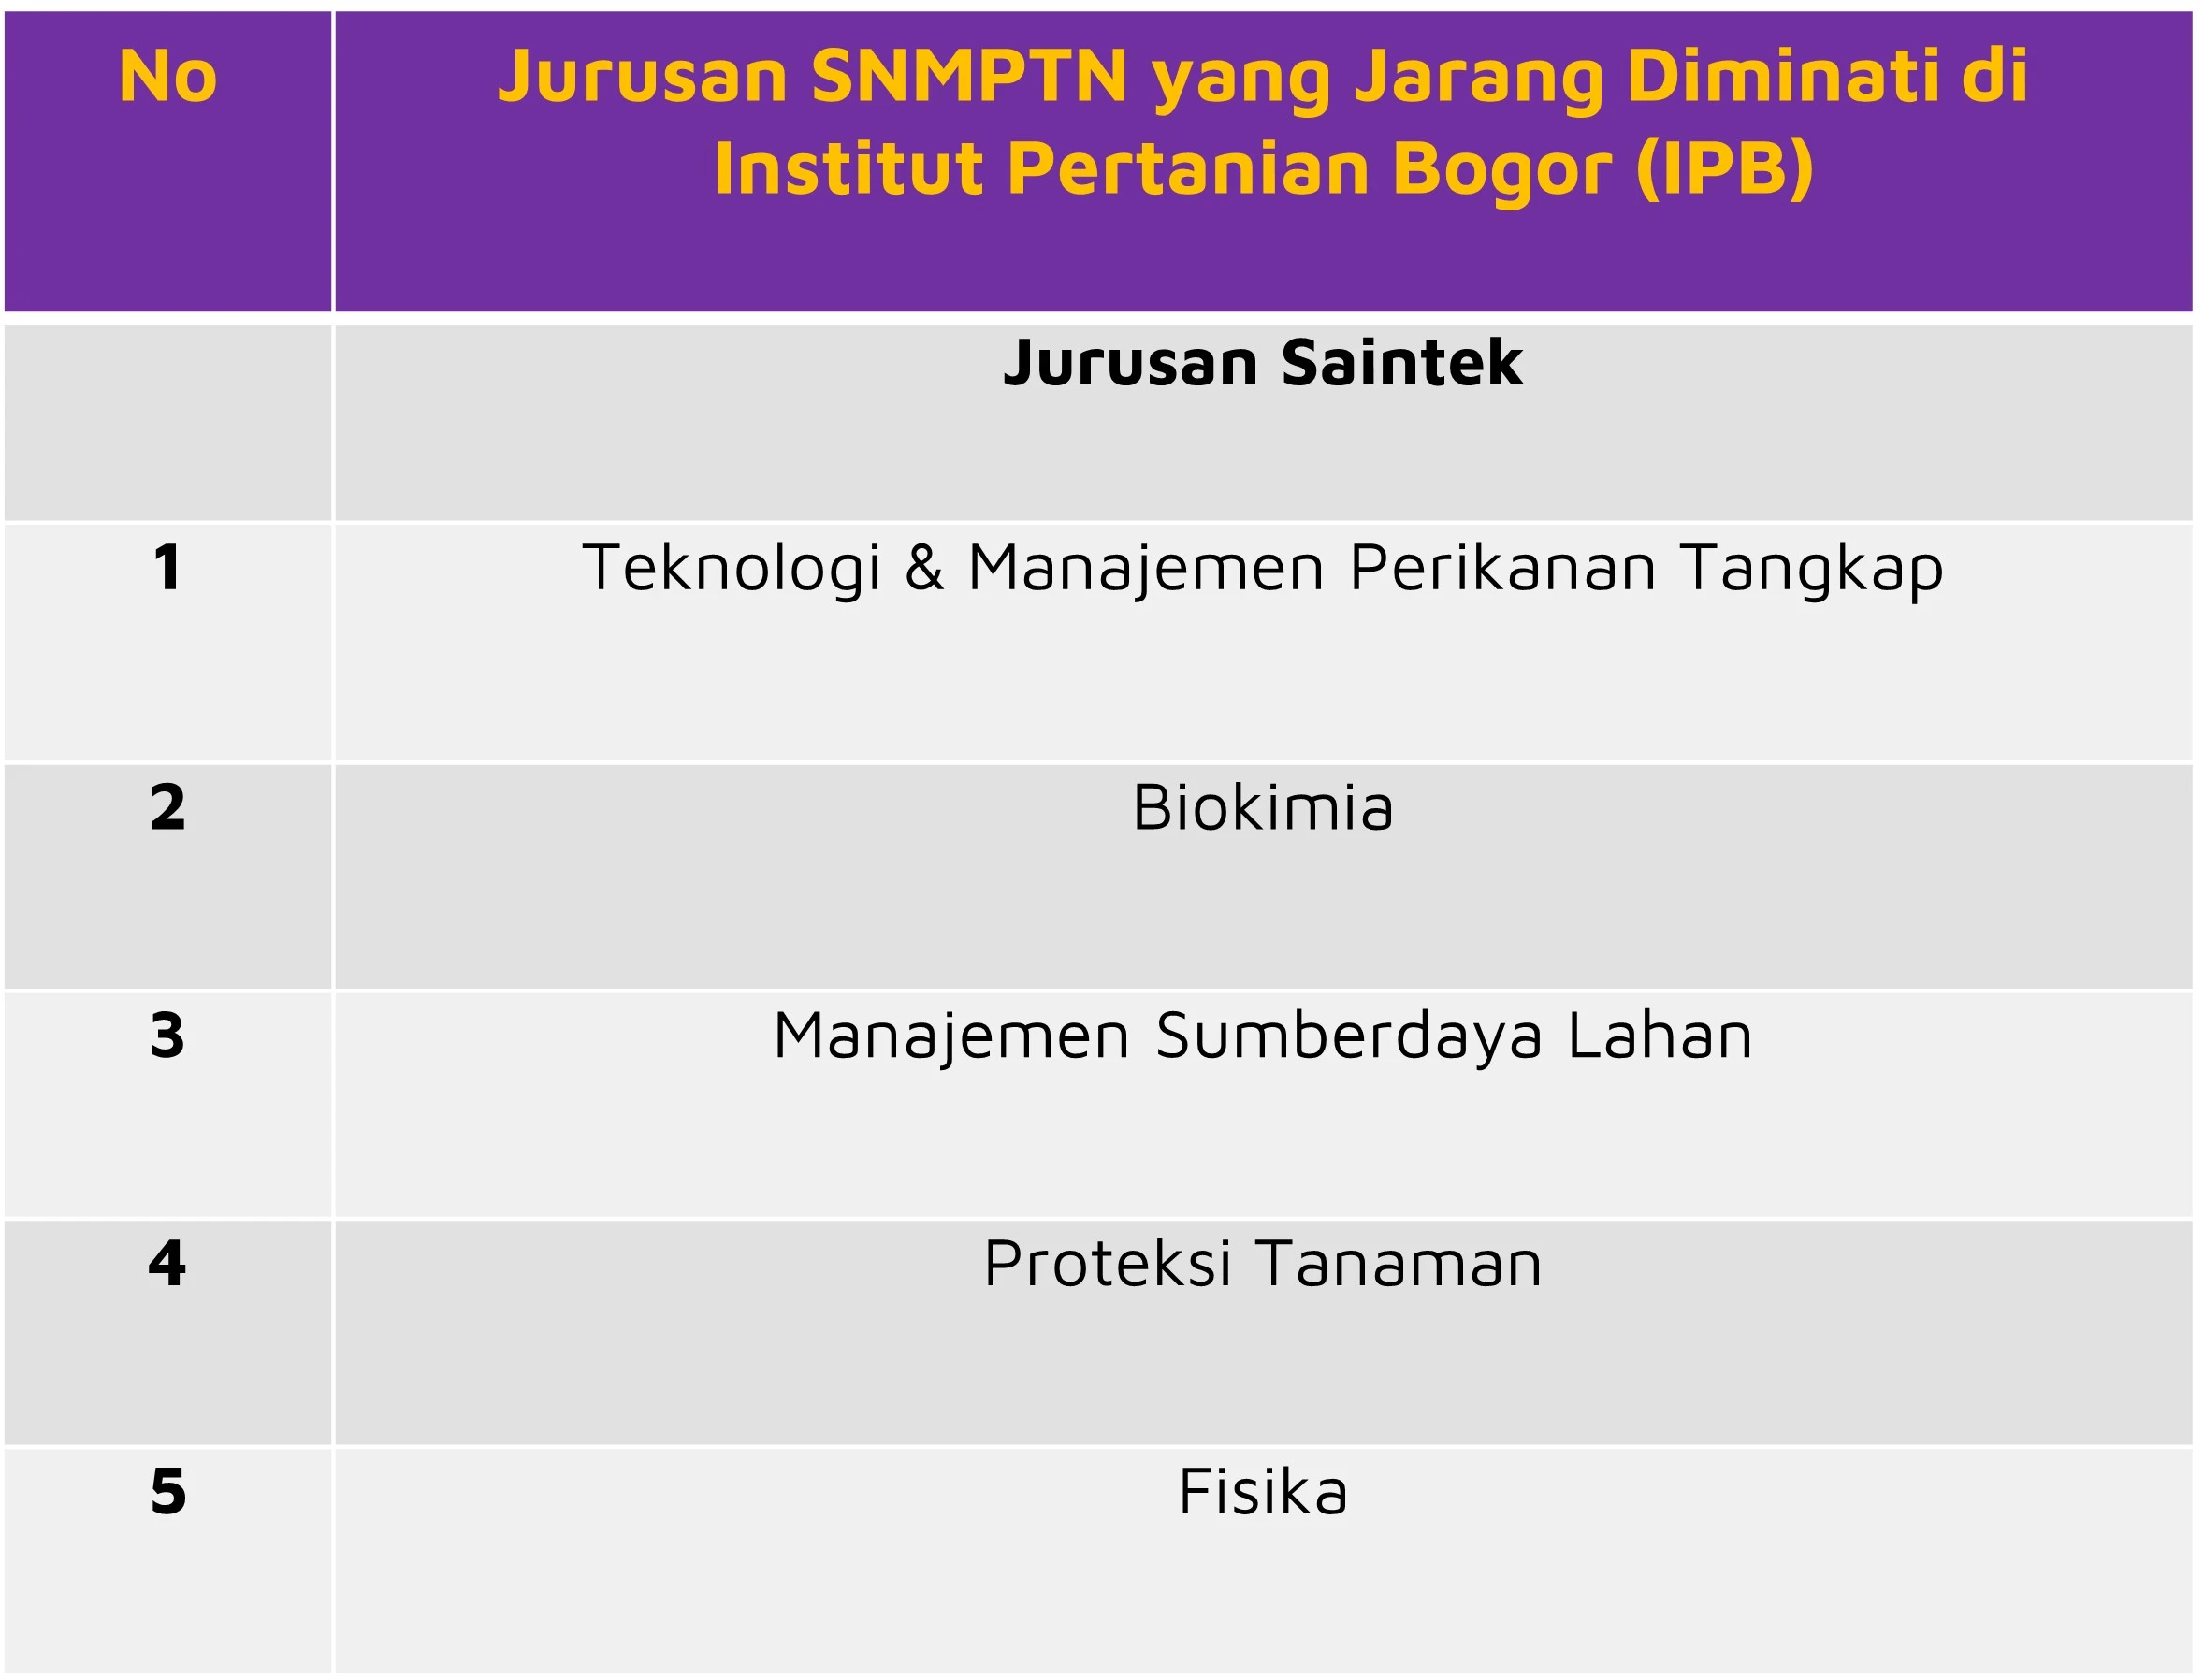 Jurusan SNMPTN yang Jarang Diminati di IPB